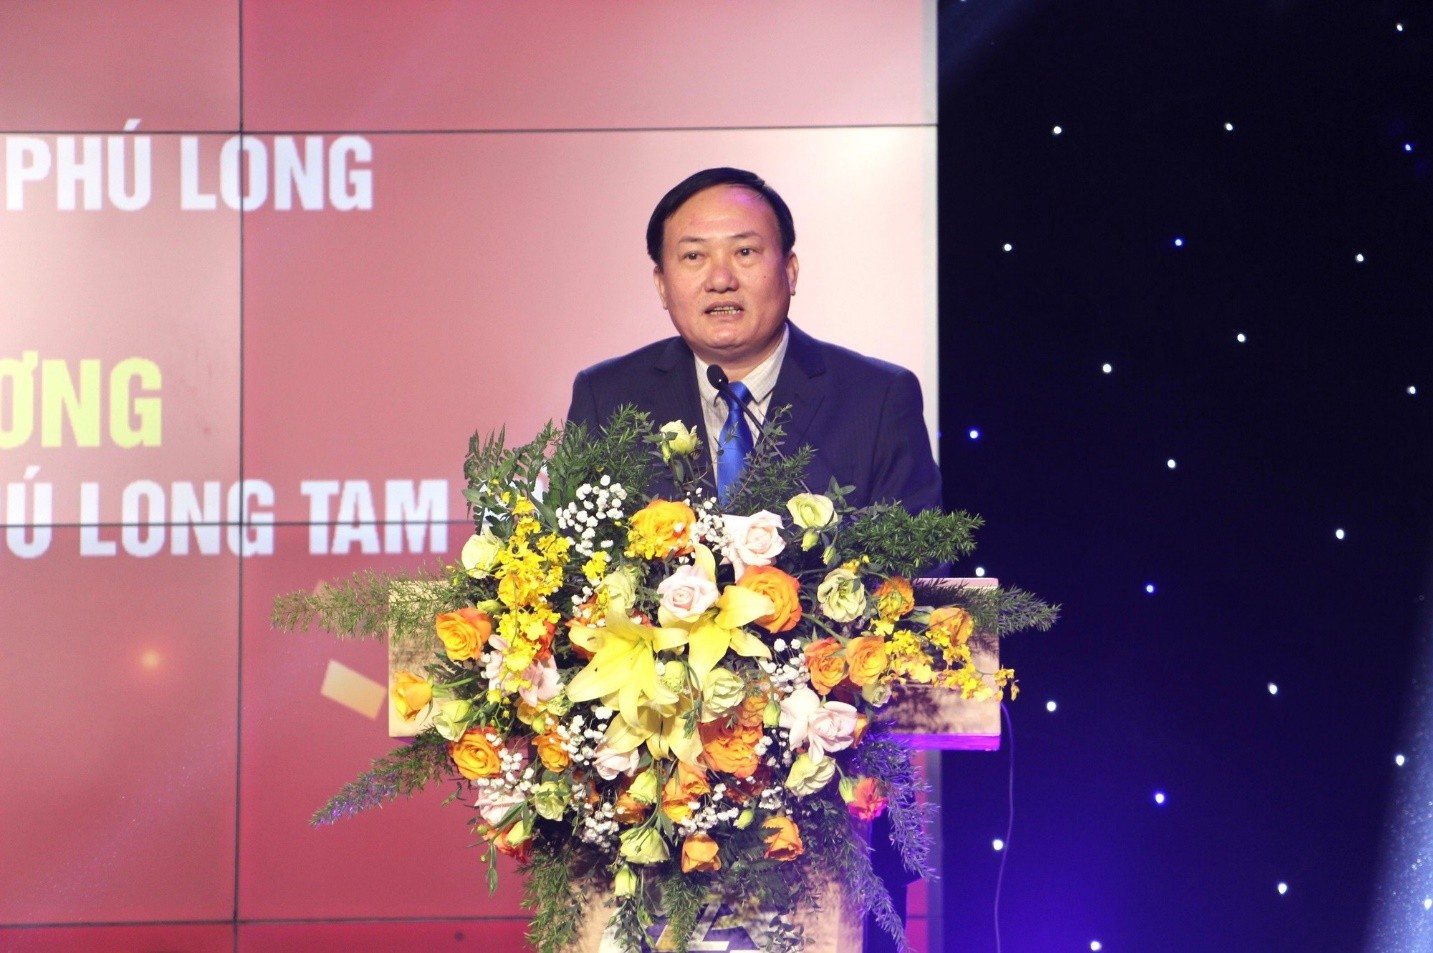 Quảng Nam: Kỷ niệm 15 năm thành lập Công ty TNHH Phú Long - Khai trương khu liên hiệp Khách sạn nhà hàng Phú Long Tam Kỳ